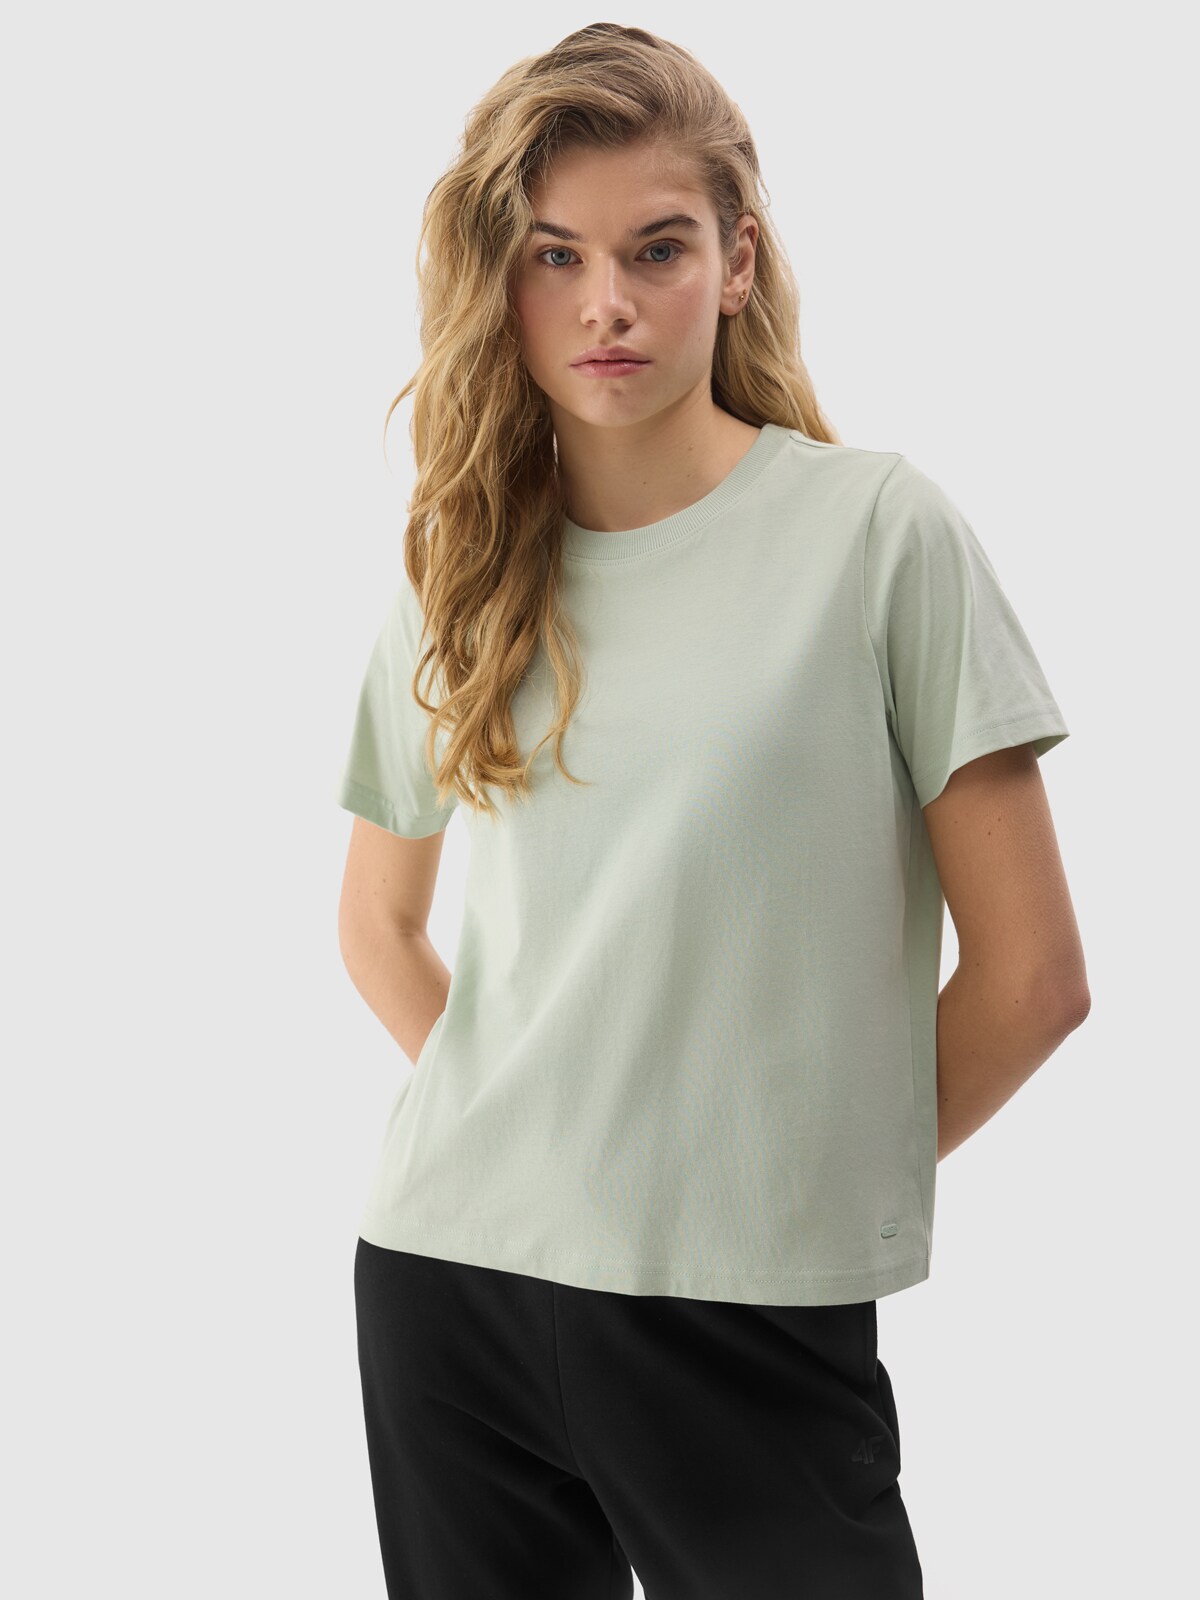 Dámske tričko z organickej bavlny bez potlače - zelené